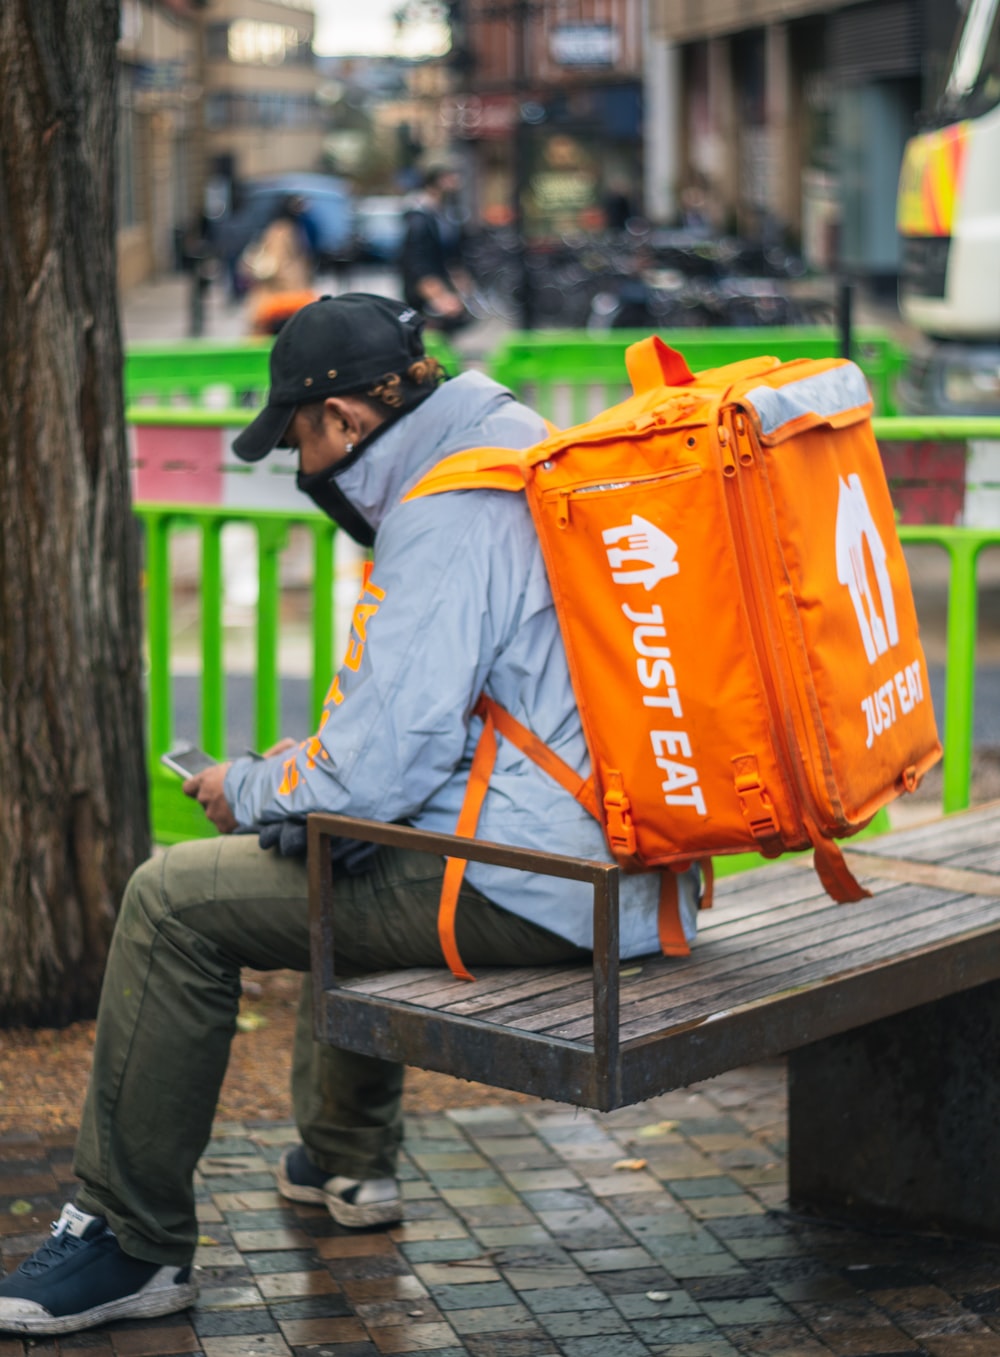 Image of a food deliverer with an orange backpack